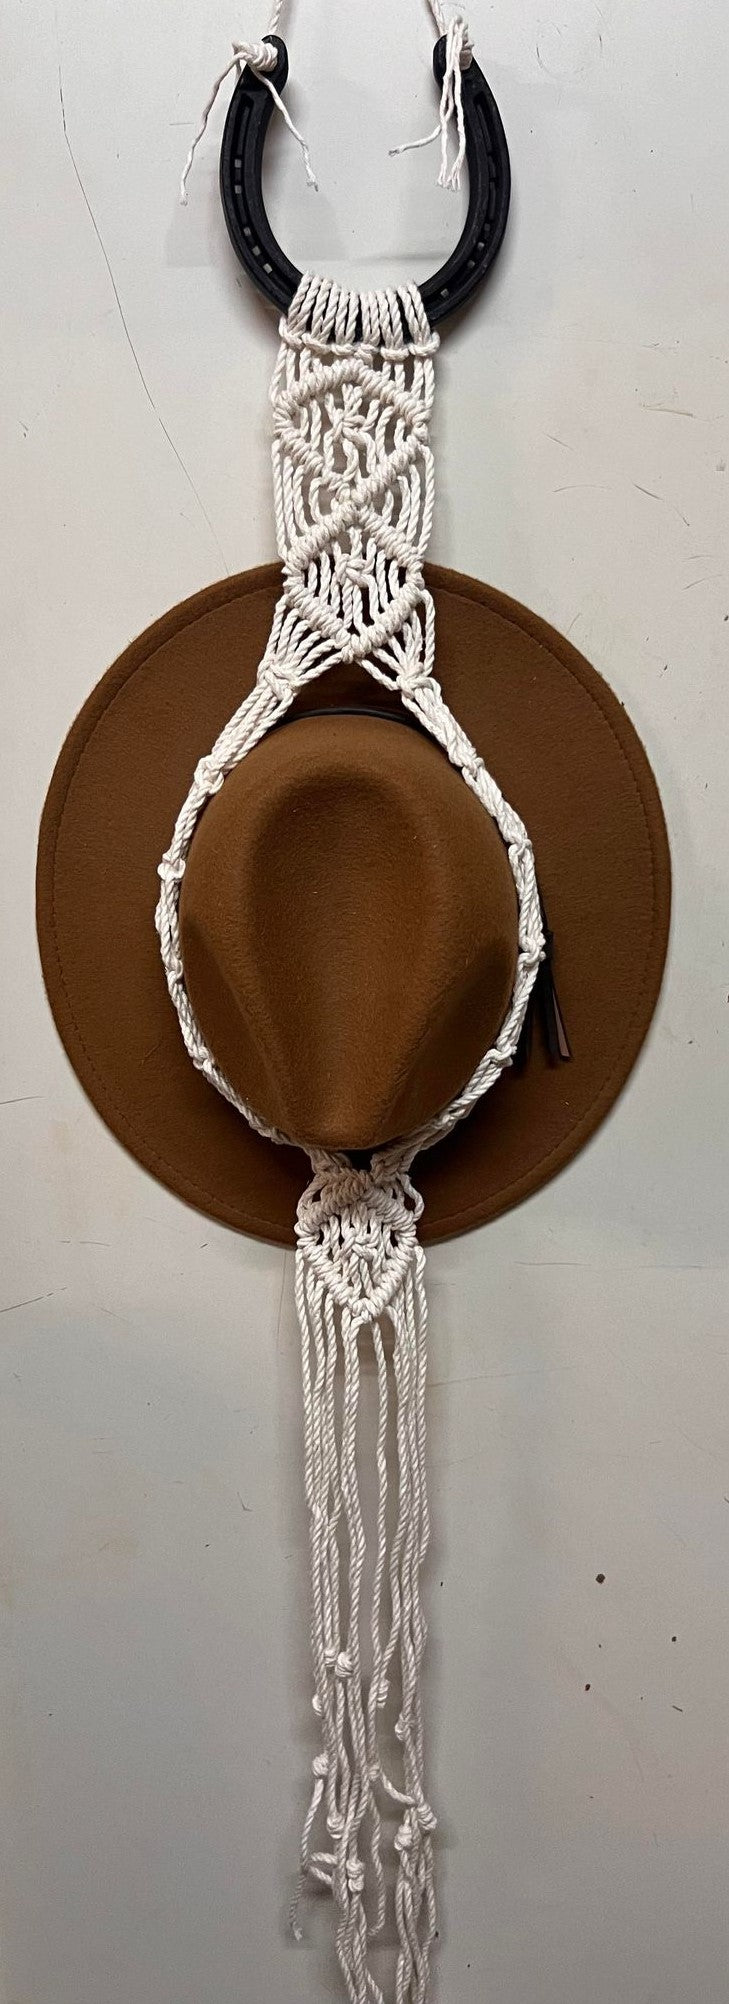 Handmade Single Hat Hanger